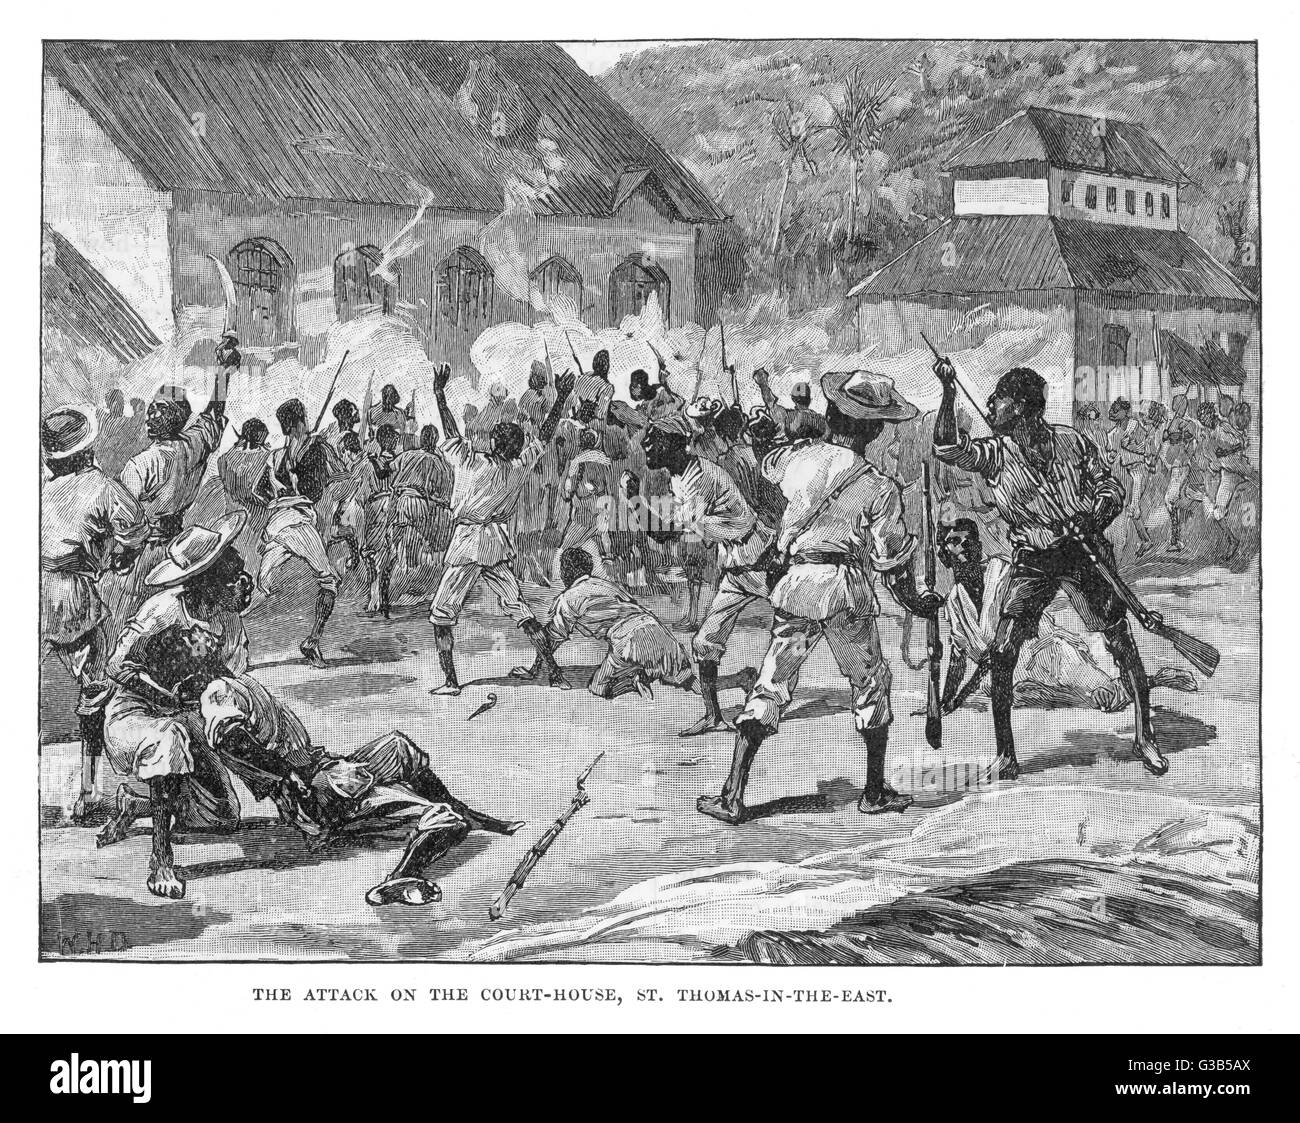 Una turba de nativos storm y prendieron fuego a los juzgados en Morant Bay, St. Thomas en el Oriente Fecha: 1865 Foto de stock